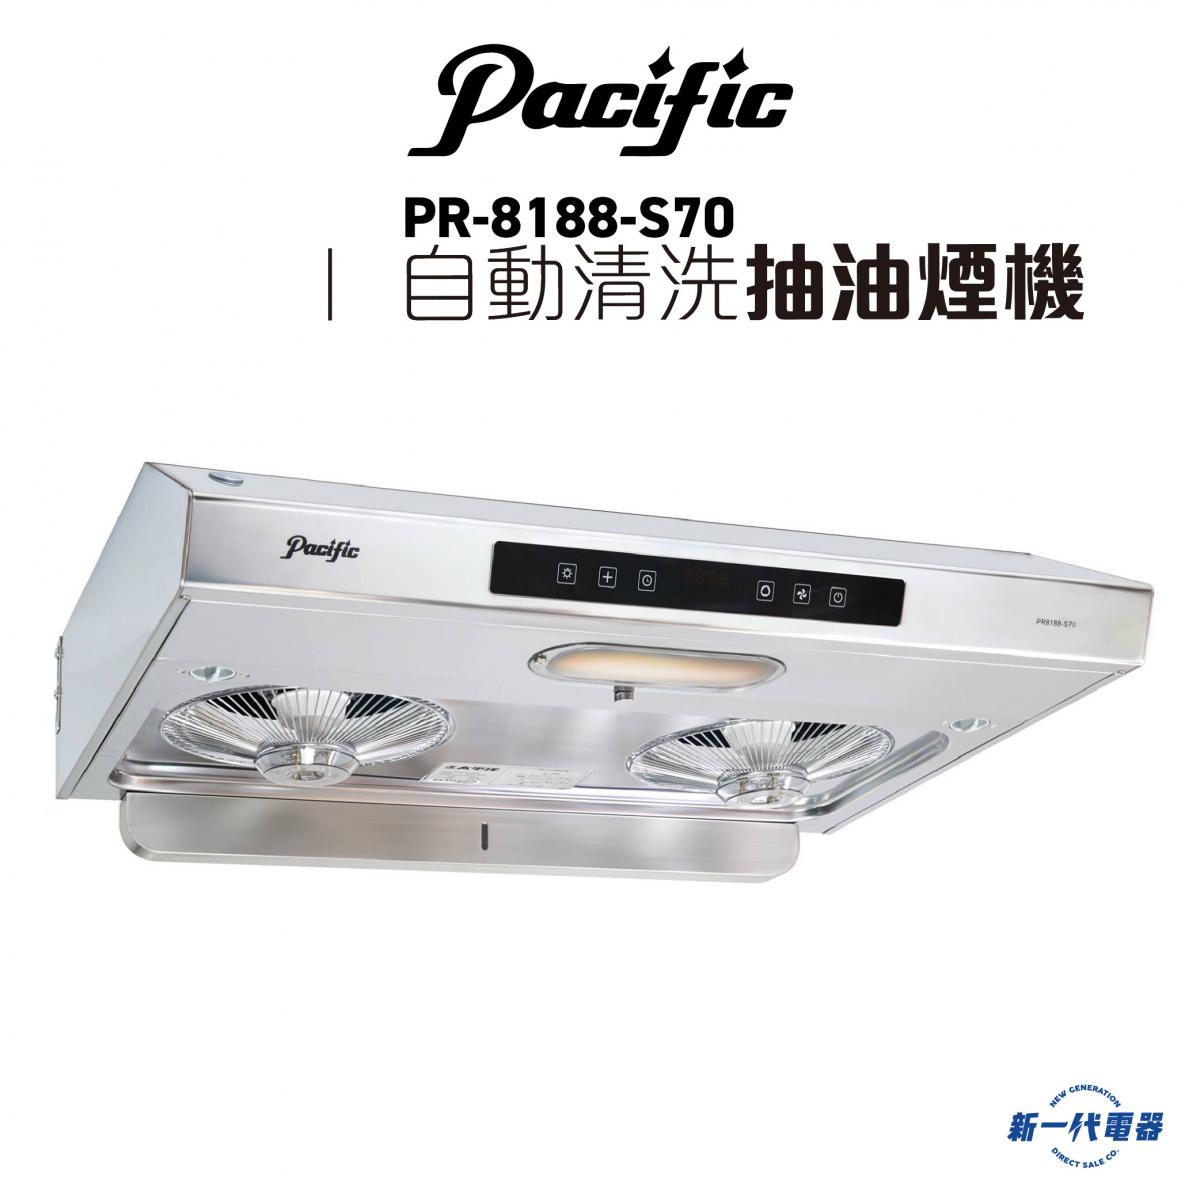 太平洋| PR8188S70 -2800轉自動清洗抽油煙機(PR-8188S70) | HKTVmall 